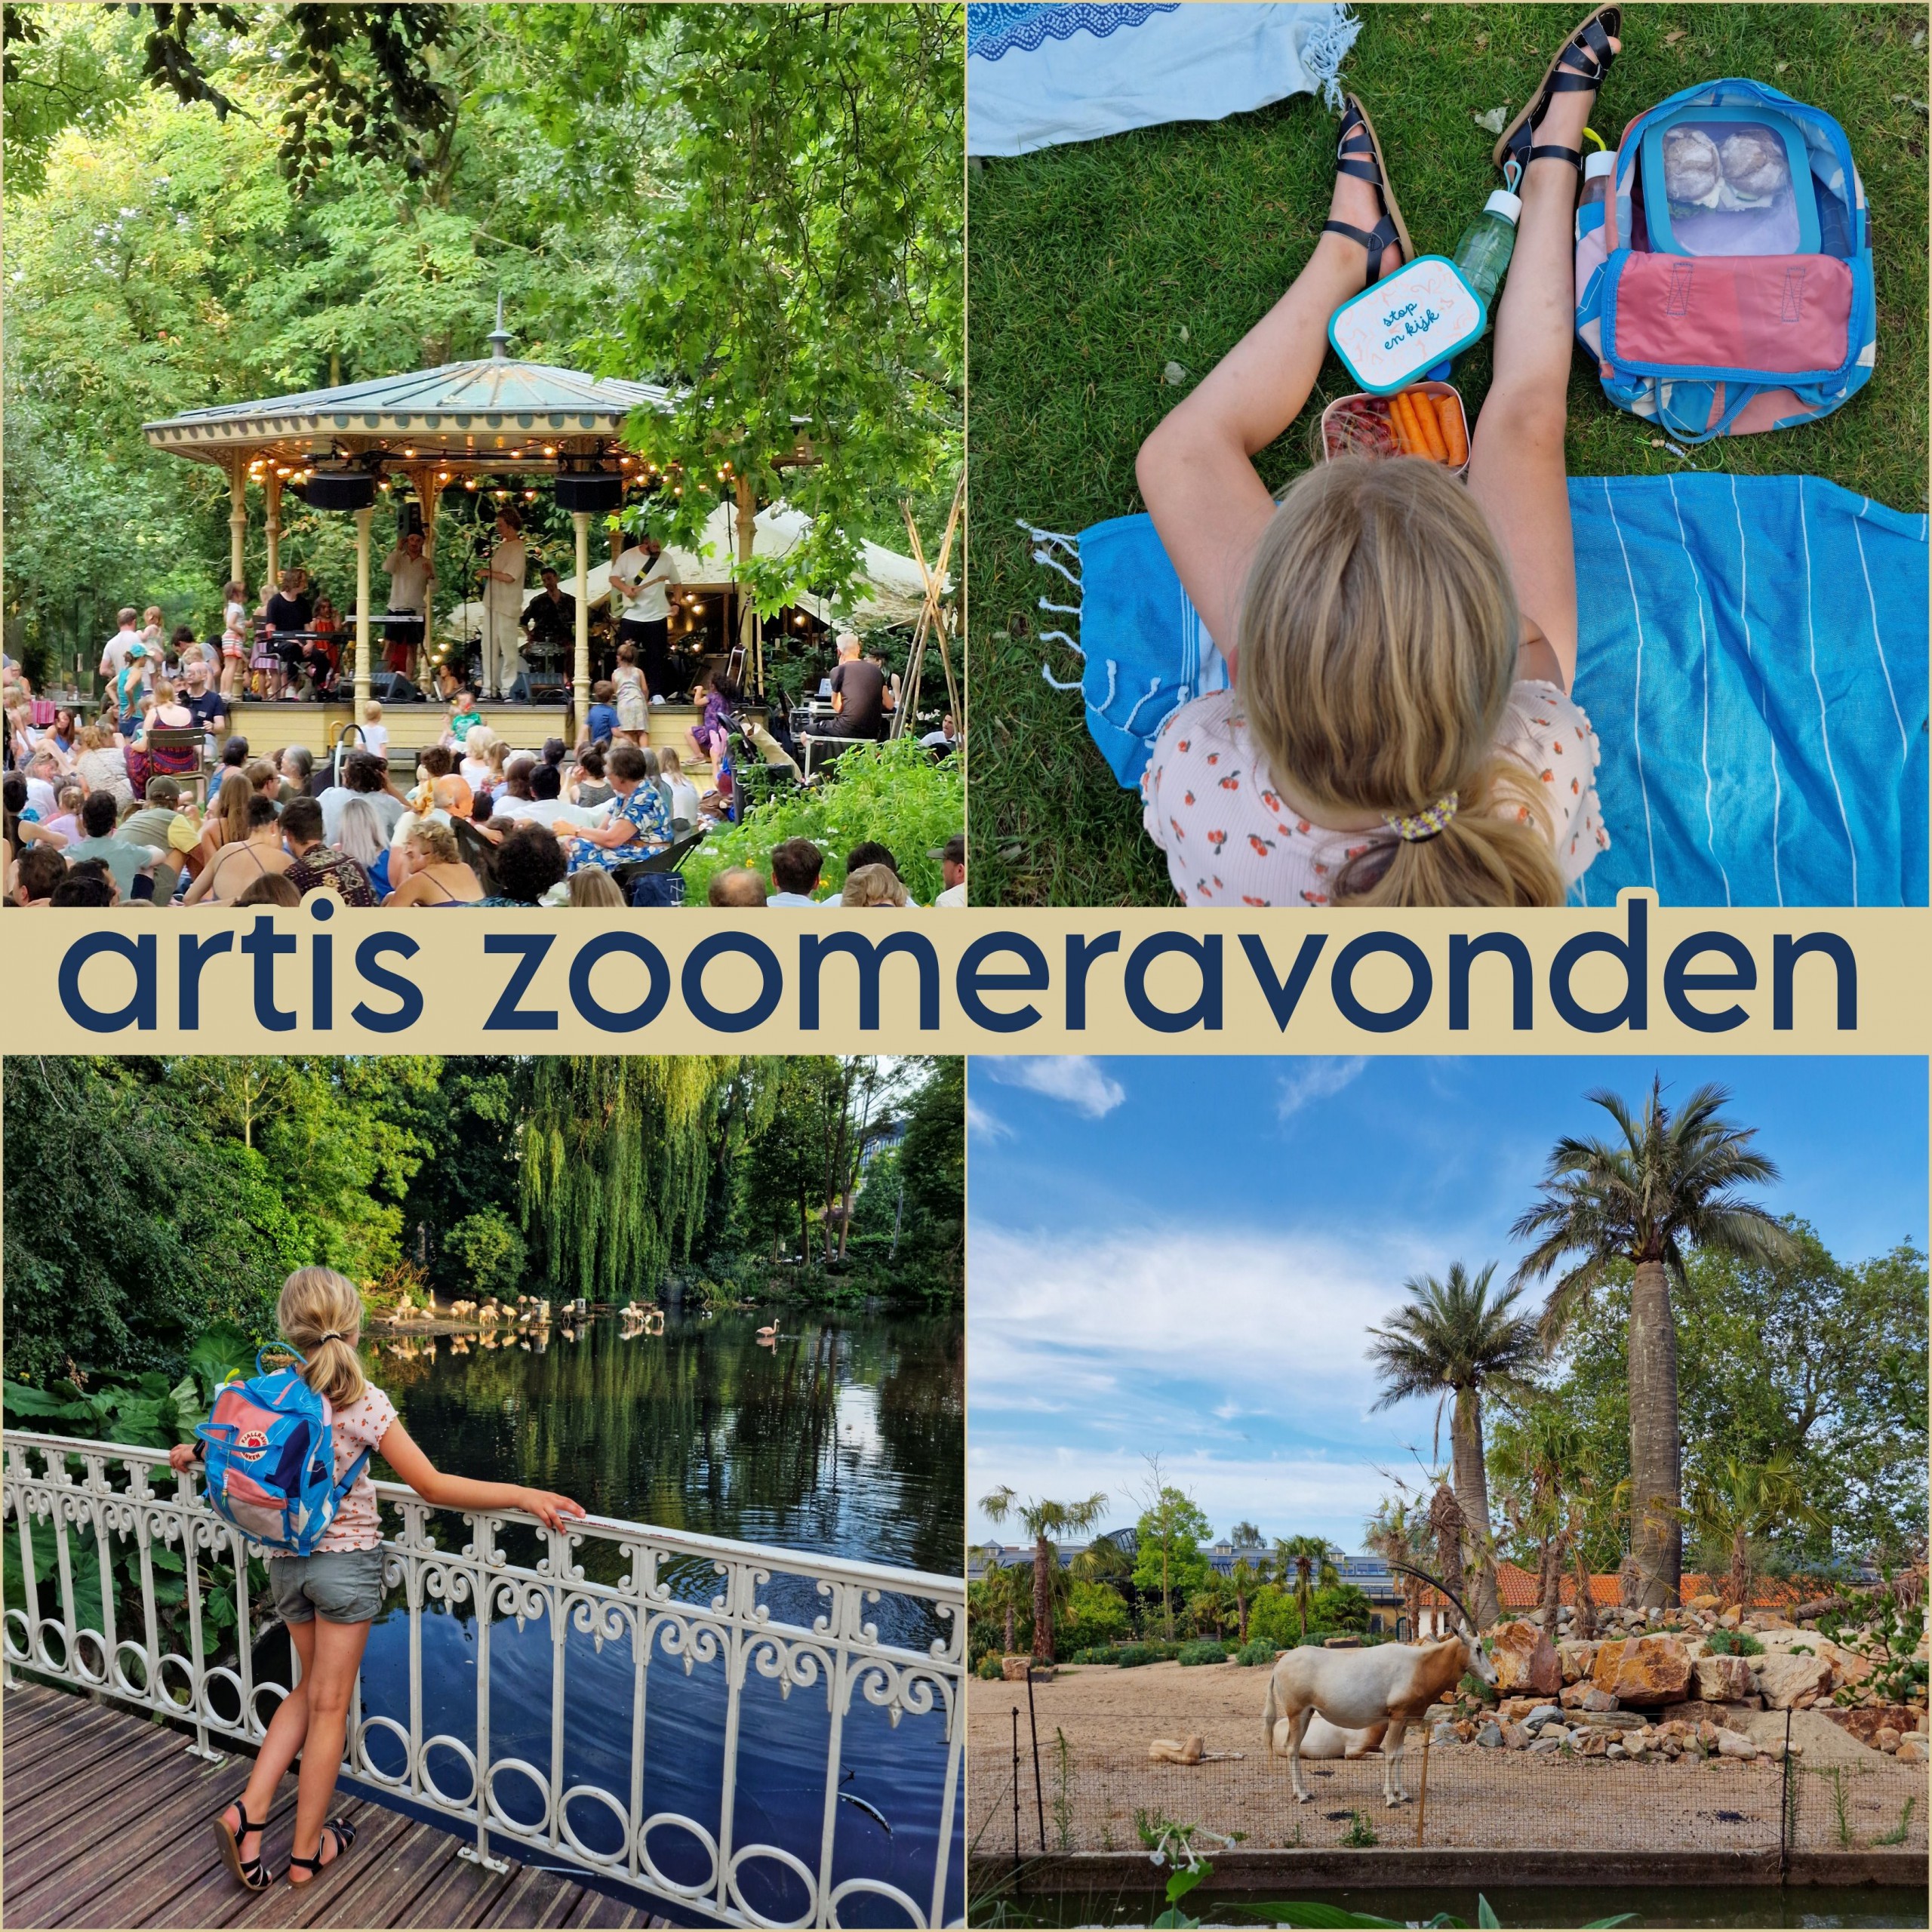 Zoomeravonden in Artis Amsterdam: leuk zomervakantie uitje. Iedere zomervakantie zijn in dierentuin Artis in Amsterdam de Zoomeravonden, een leuk uitje met kinderen. Met picknick, livemuziek en meer. Ik ging er met dochterlief heen. 